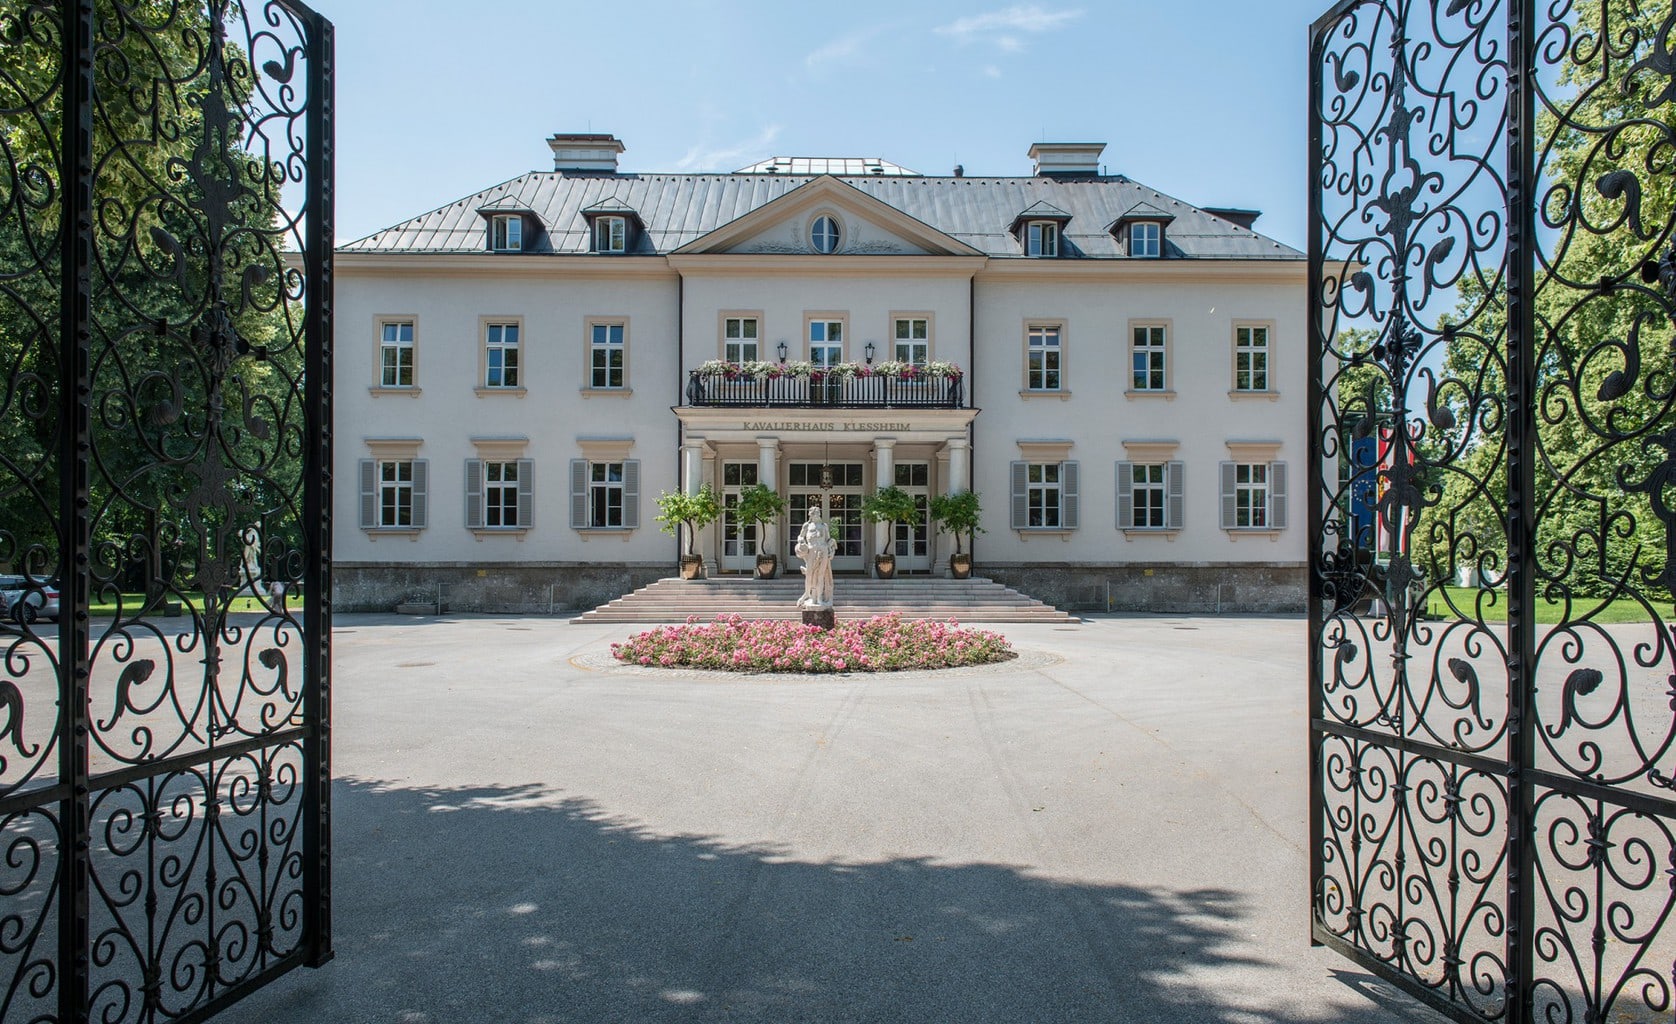 Kavalierhaus Klessheim elegant entry way